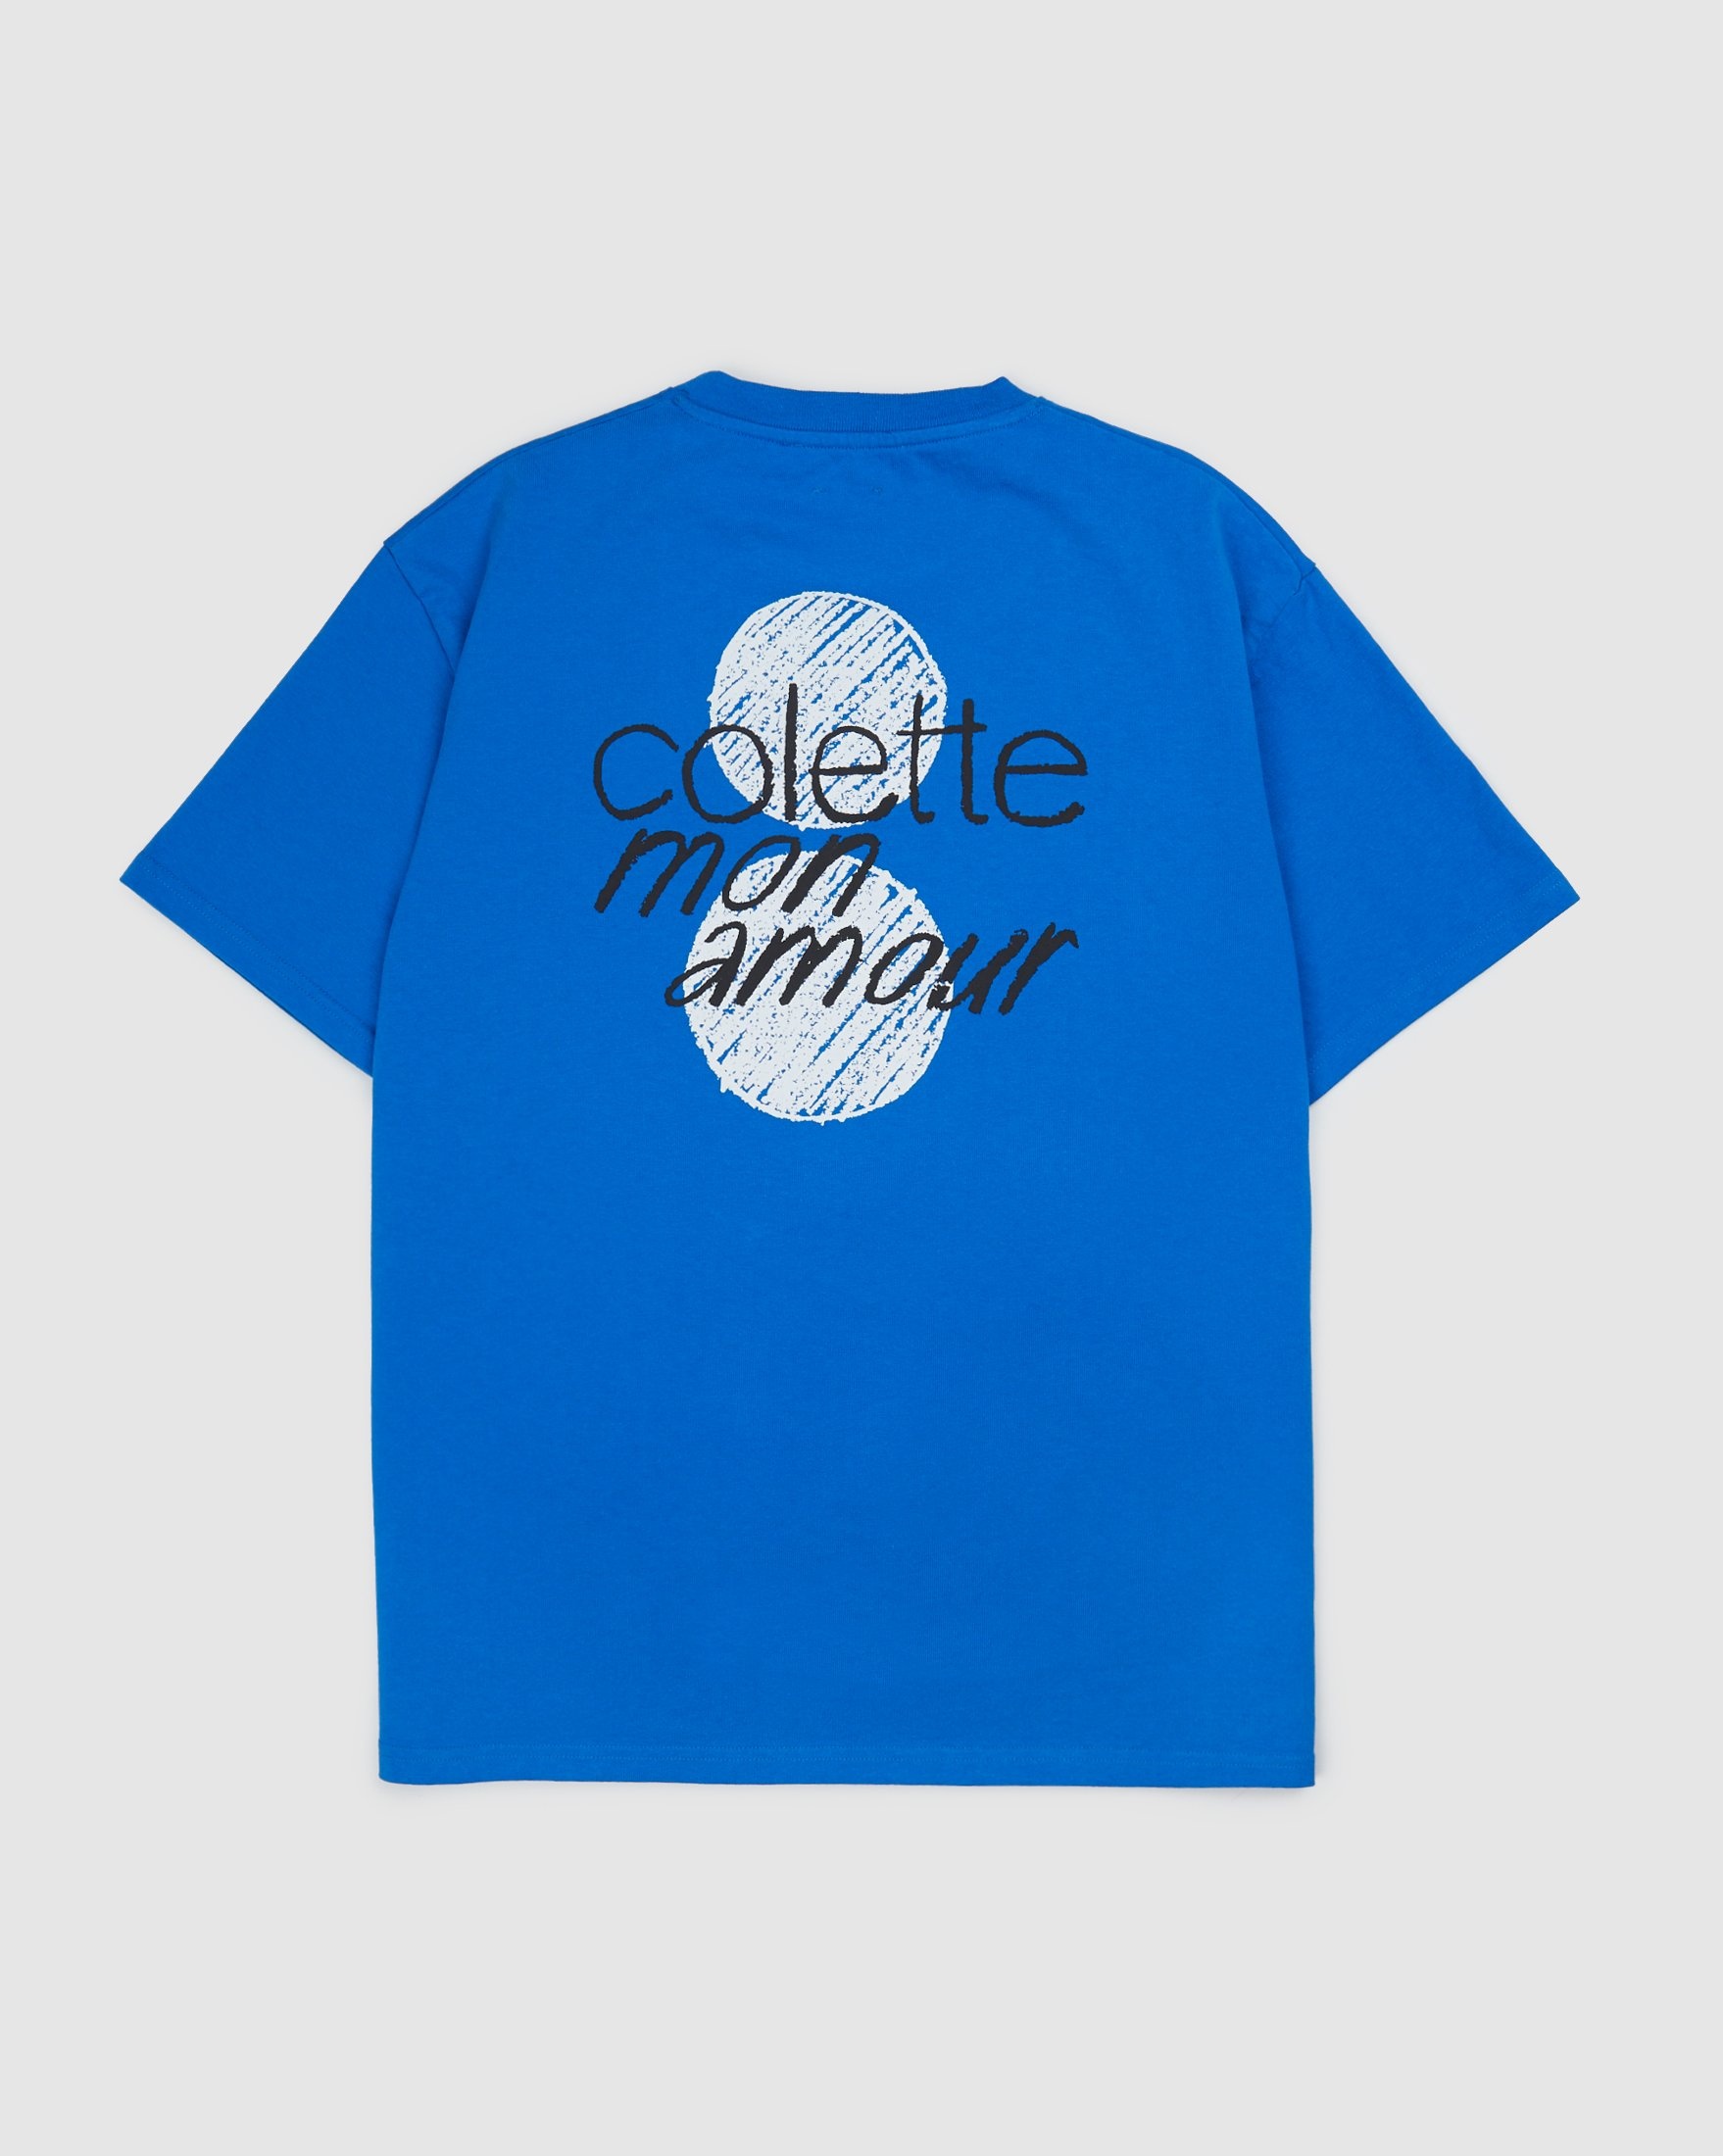 Colette Mon Amour – HS Dots T-Shirt Blue - T-shirts - Blue - Image 1